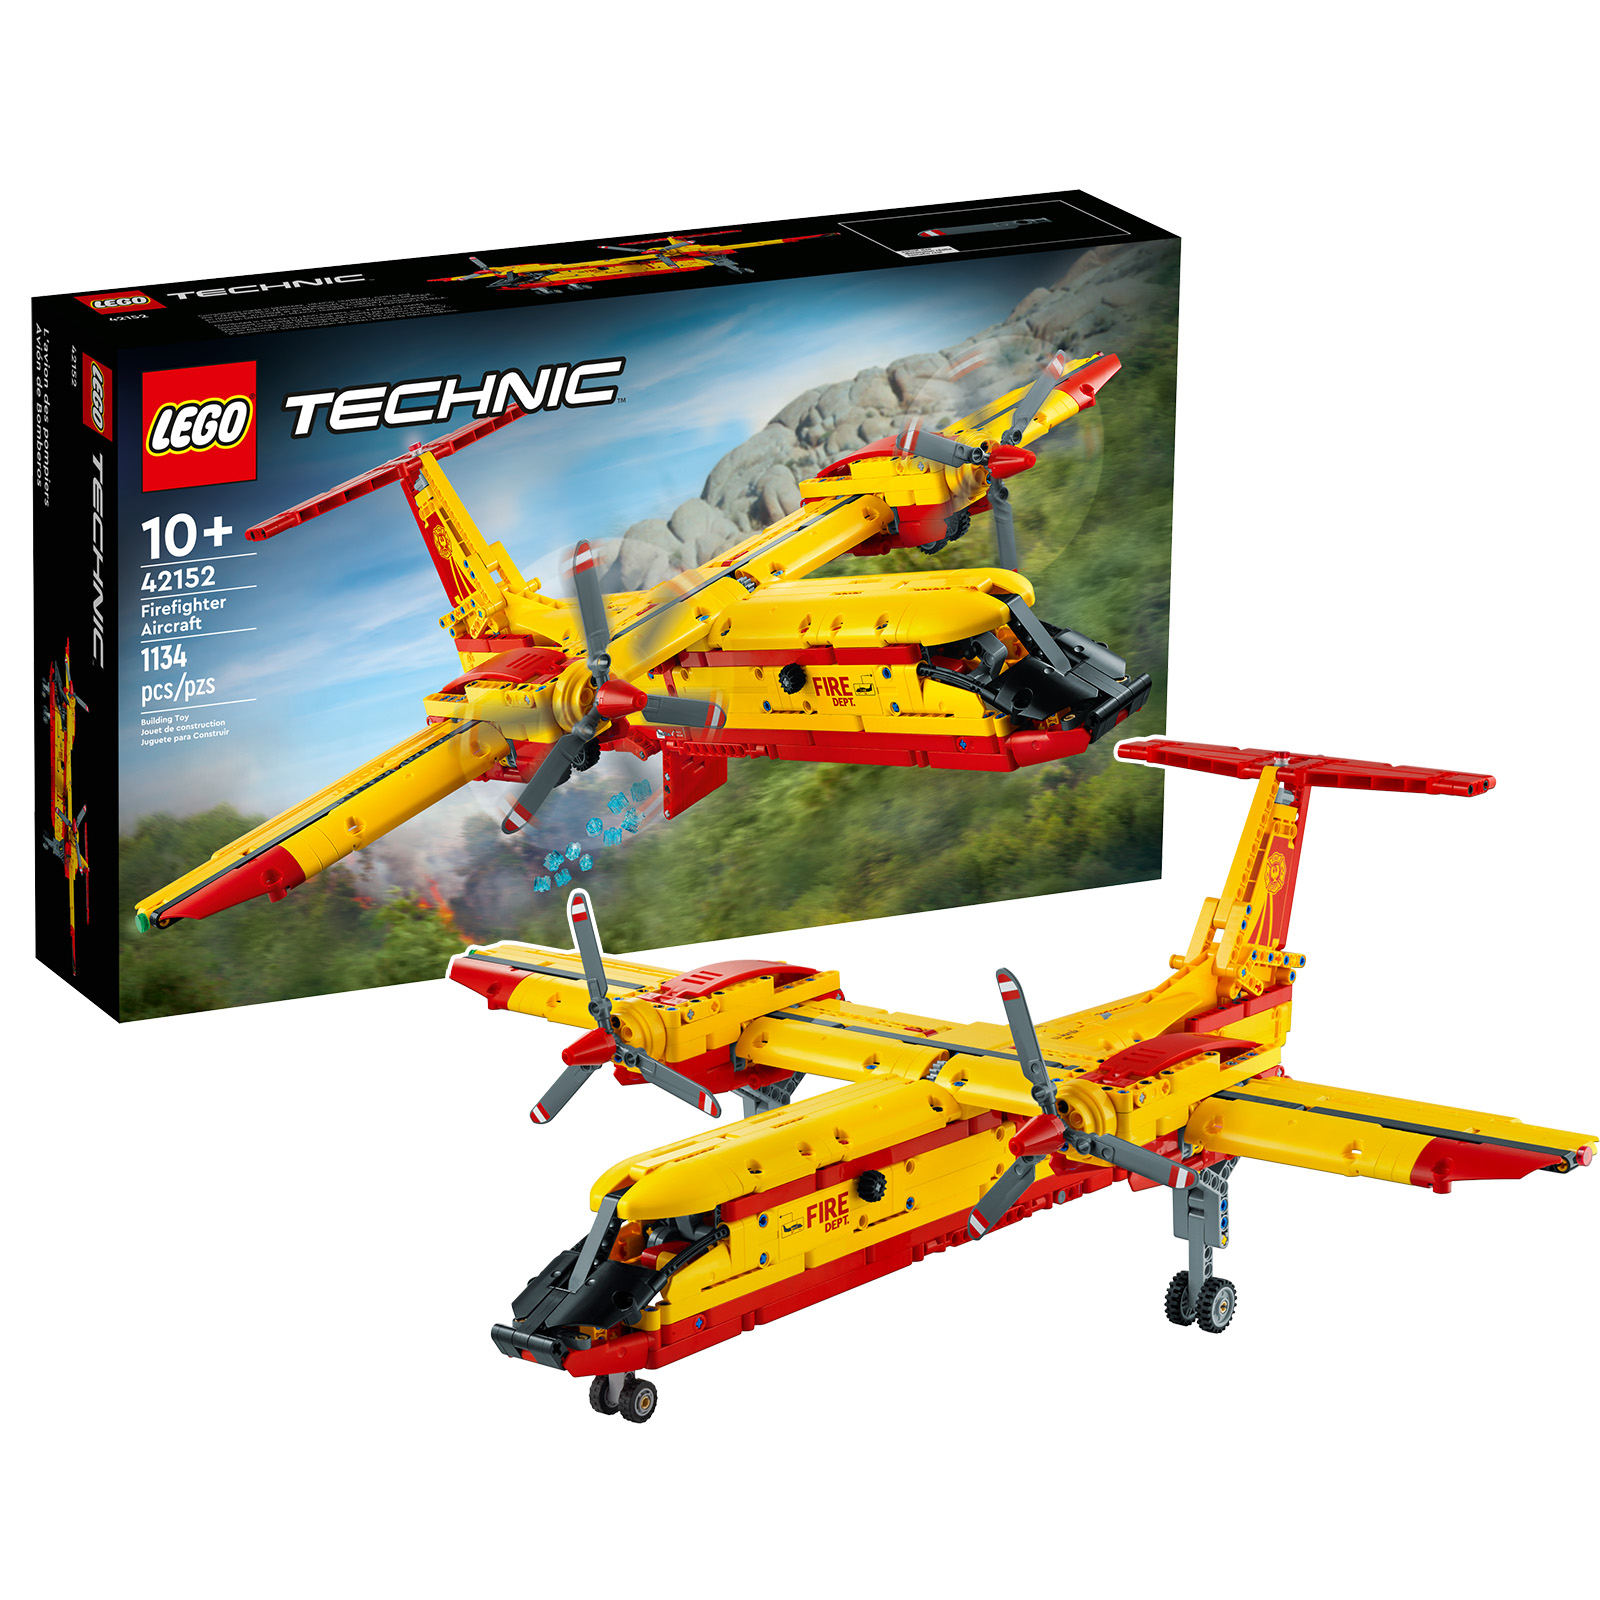 در فروشگاه LEGO: مجموعه هواپیمای آتش نشانی LEGO Technic 42152 در پیش سفارش است